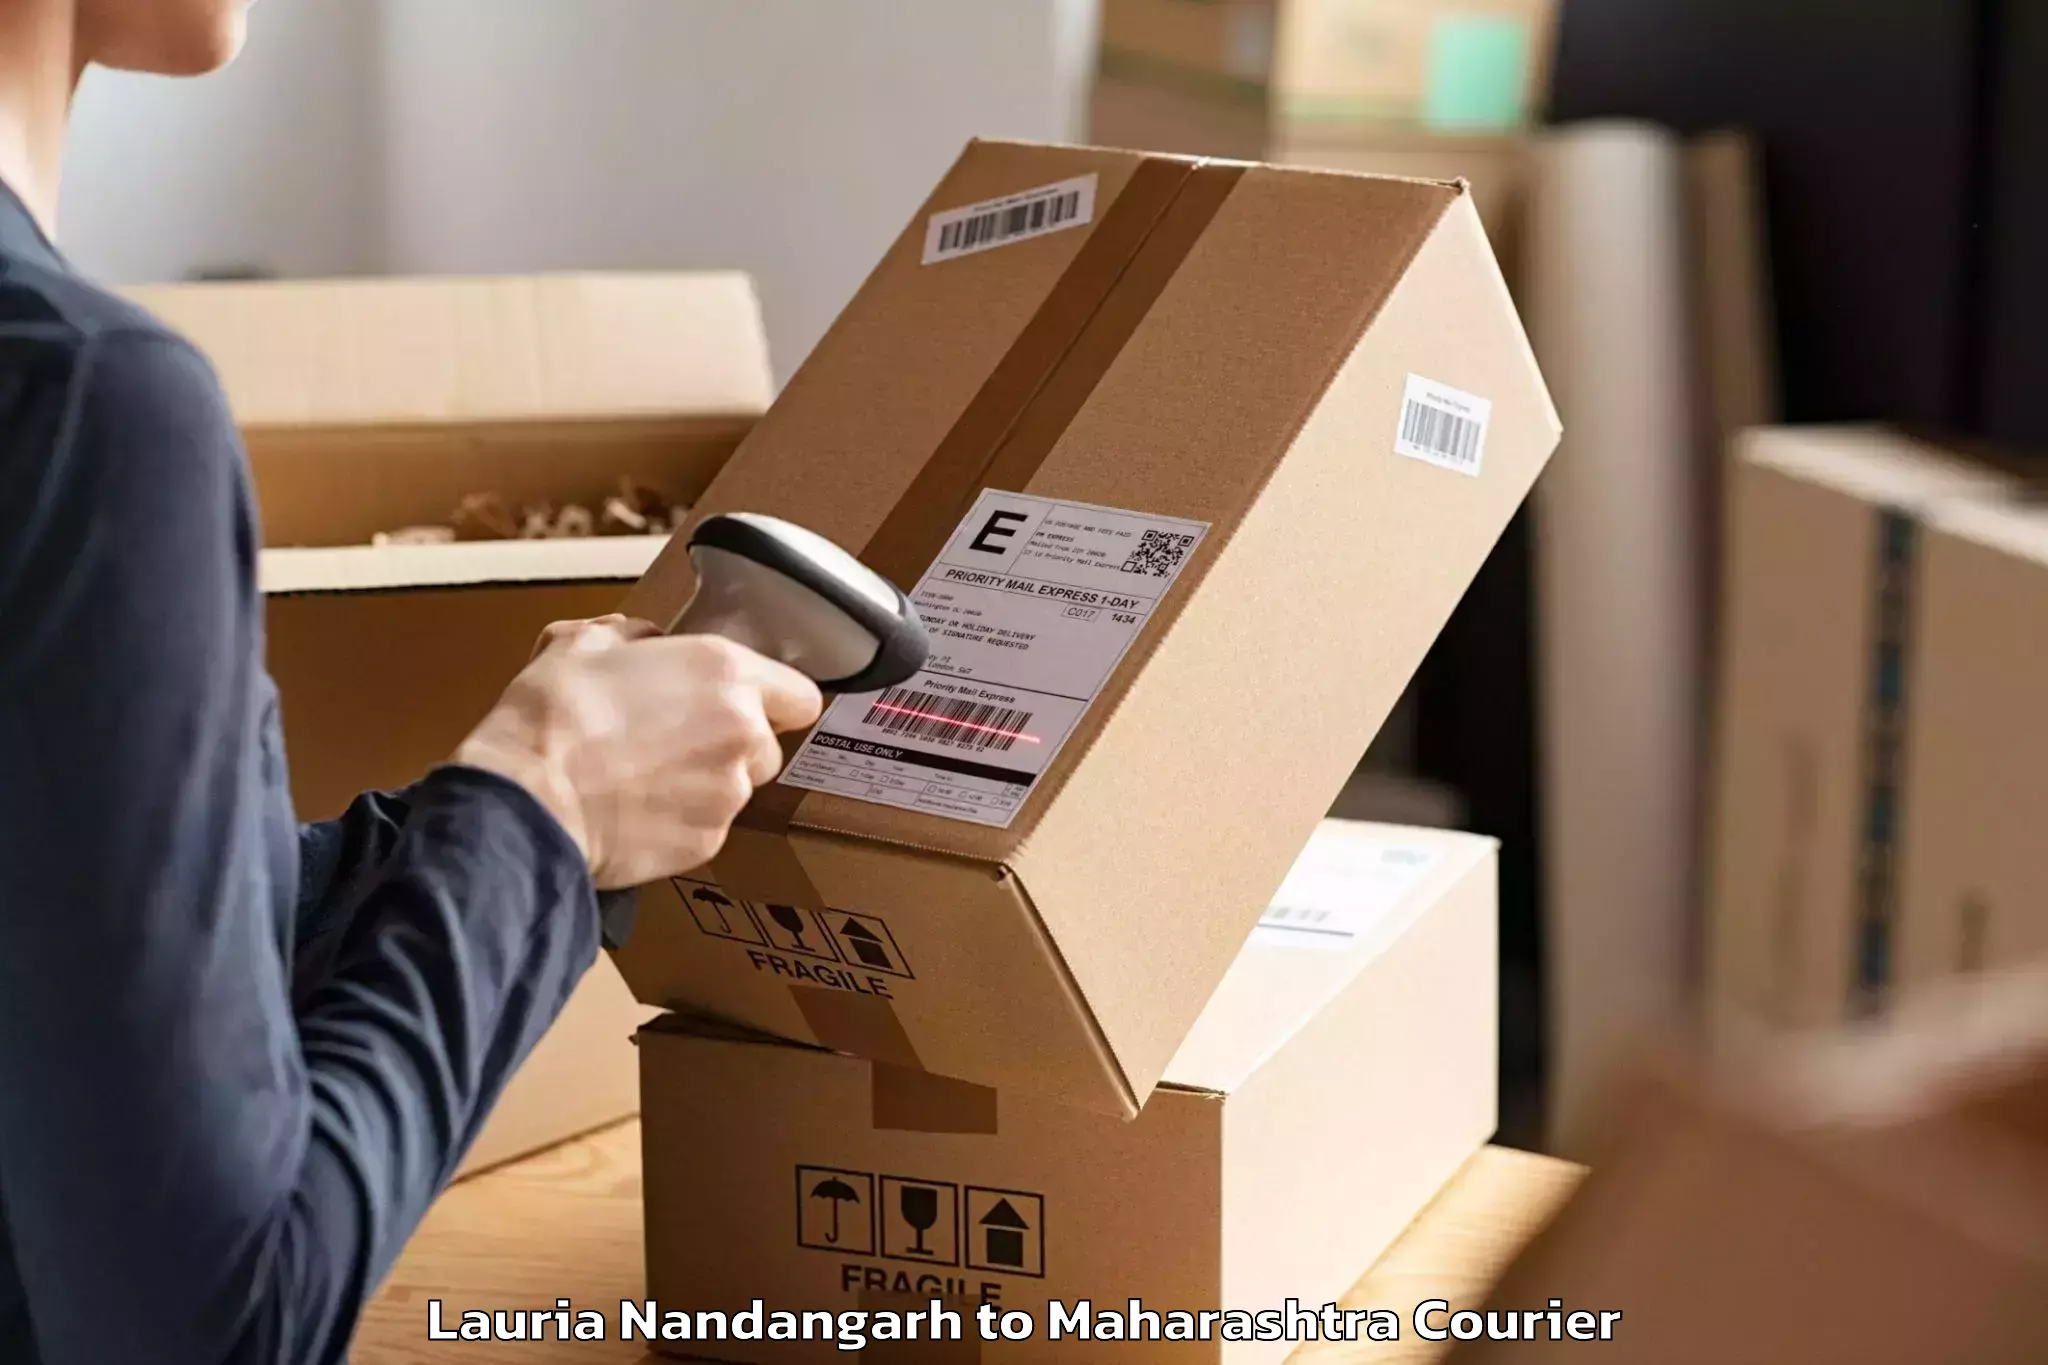 Furniture delivery service Lauria Nandangarh to Pimpri Chinchwad